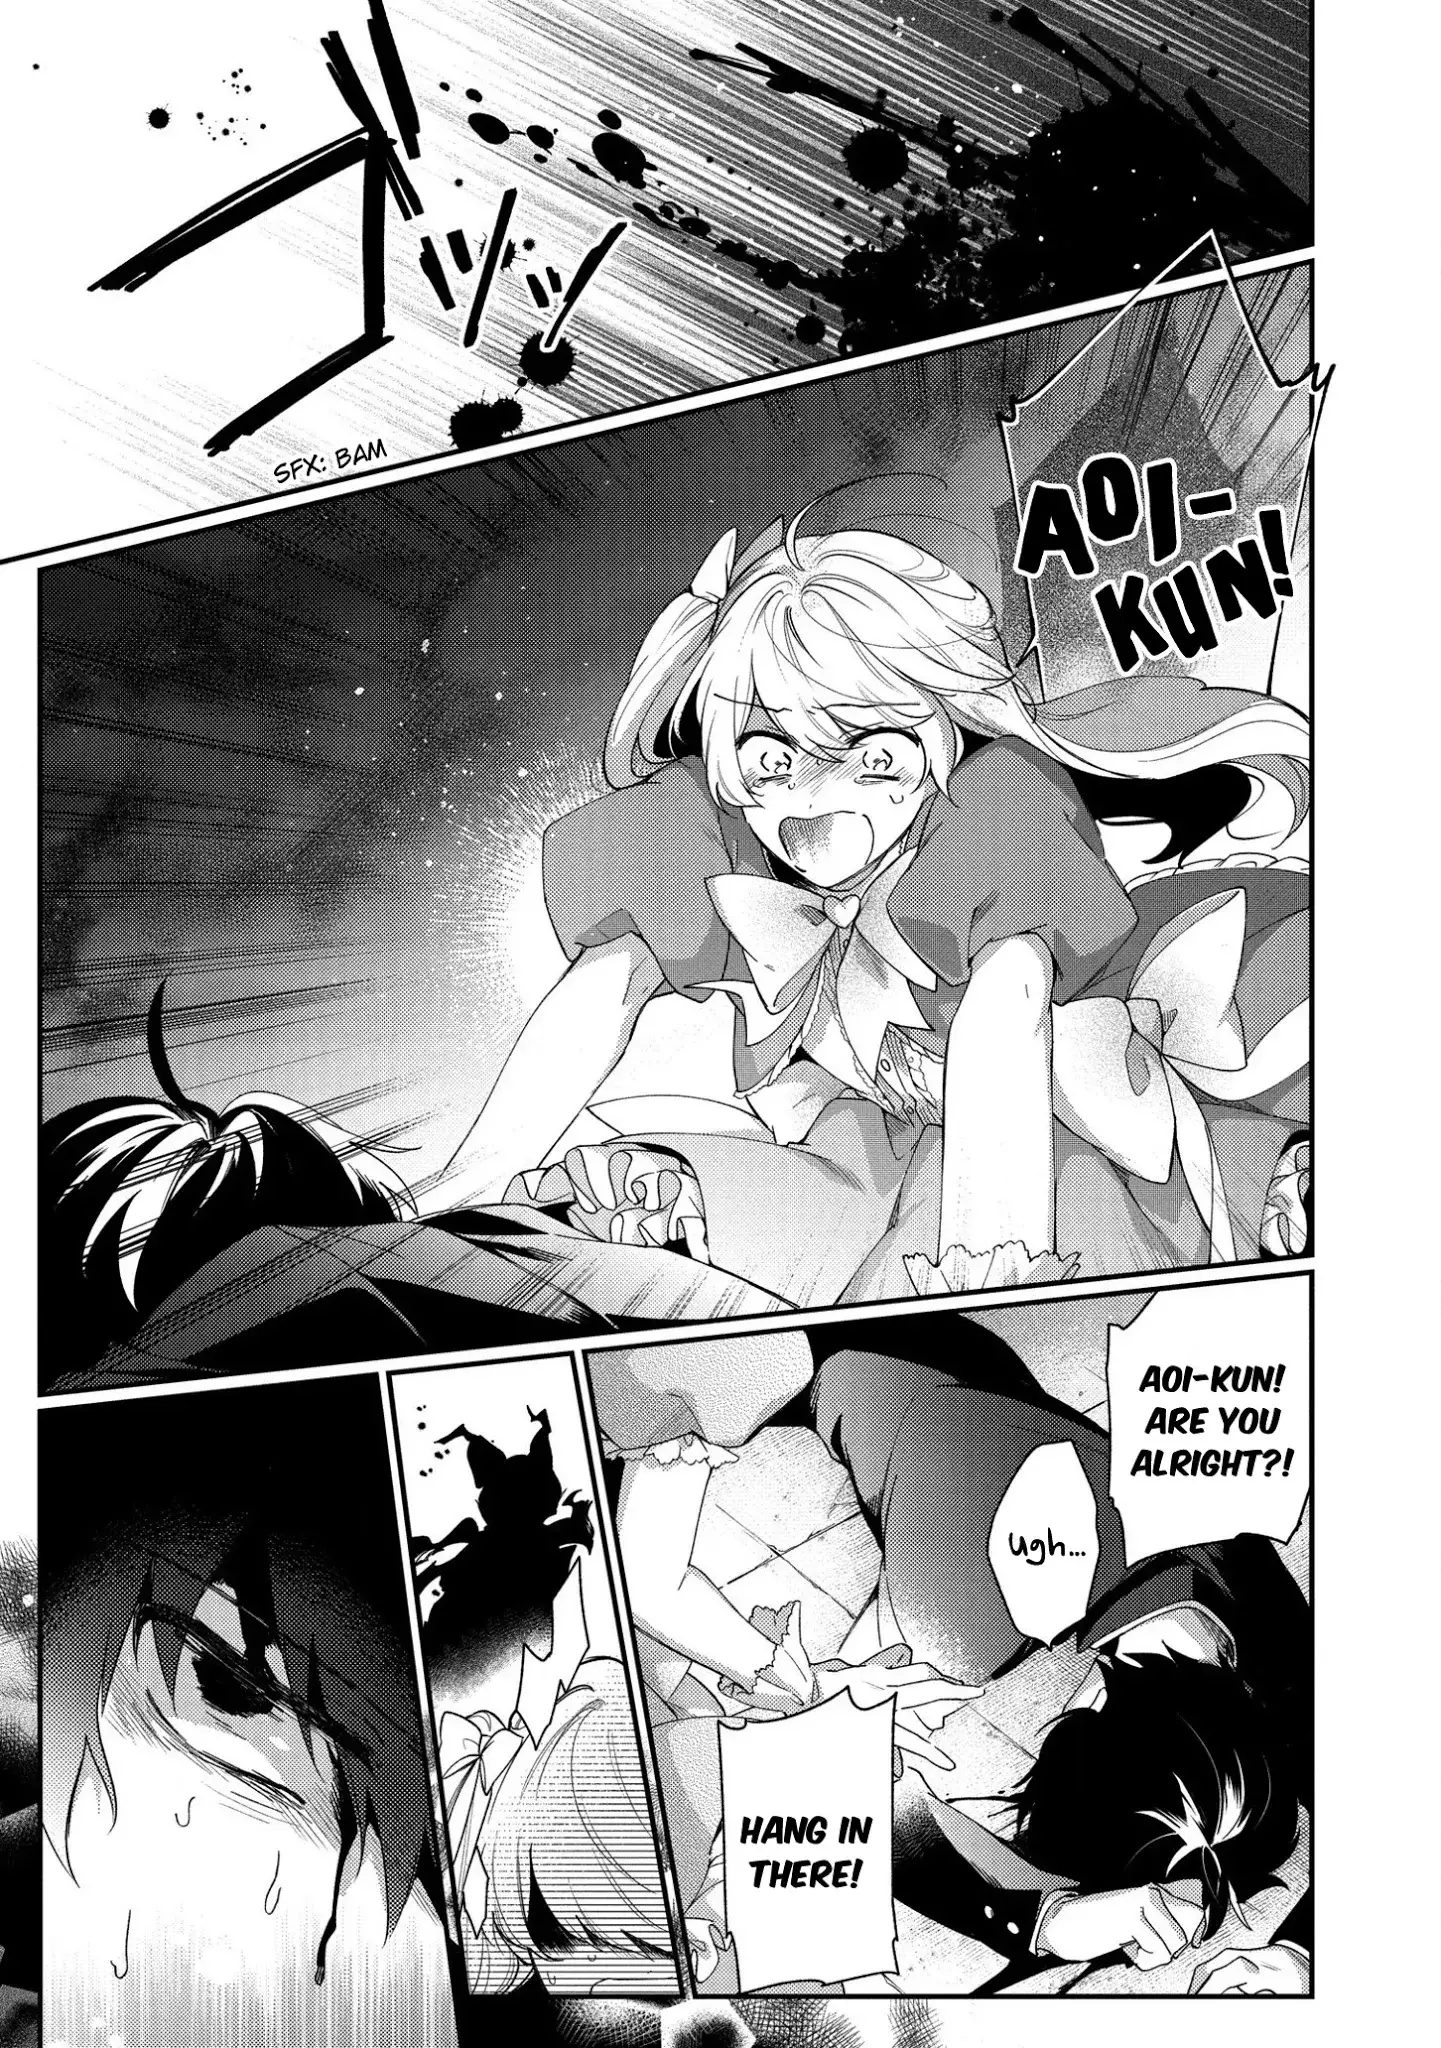 No Match For Aoi-Kun - 1 page 31